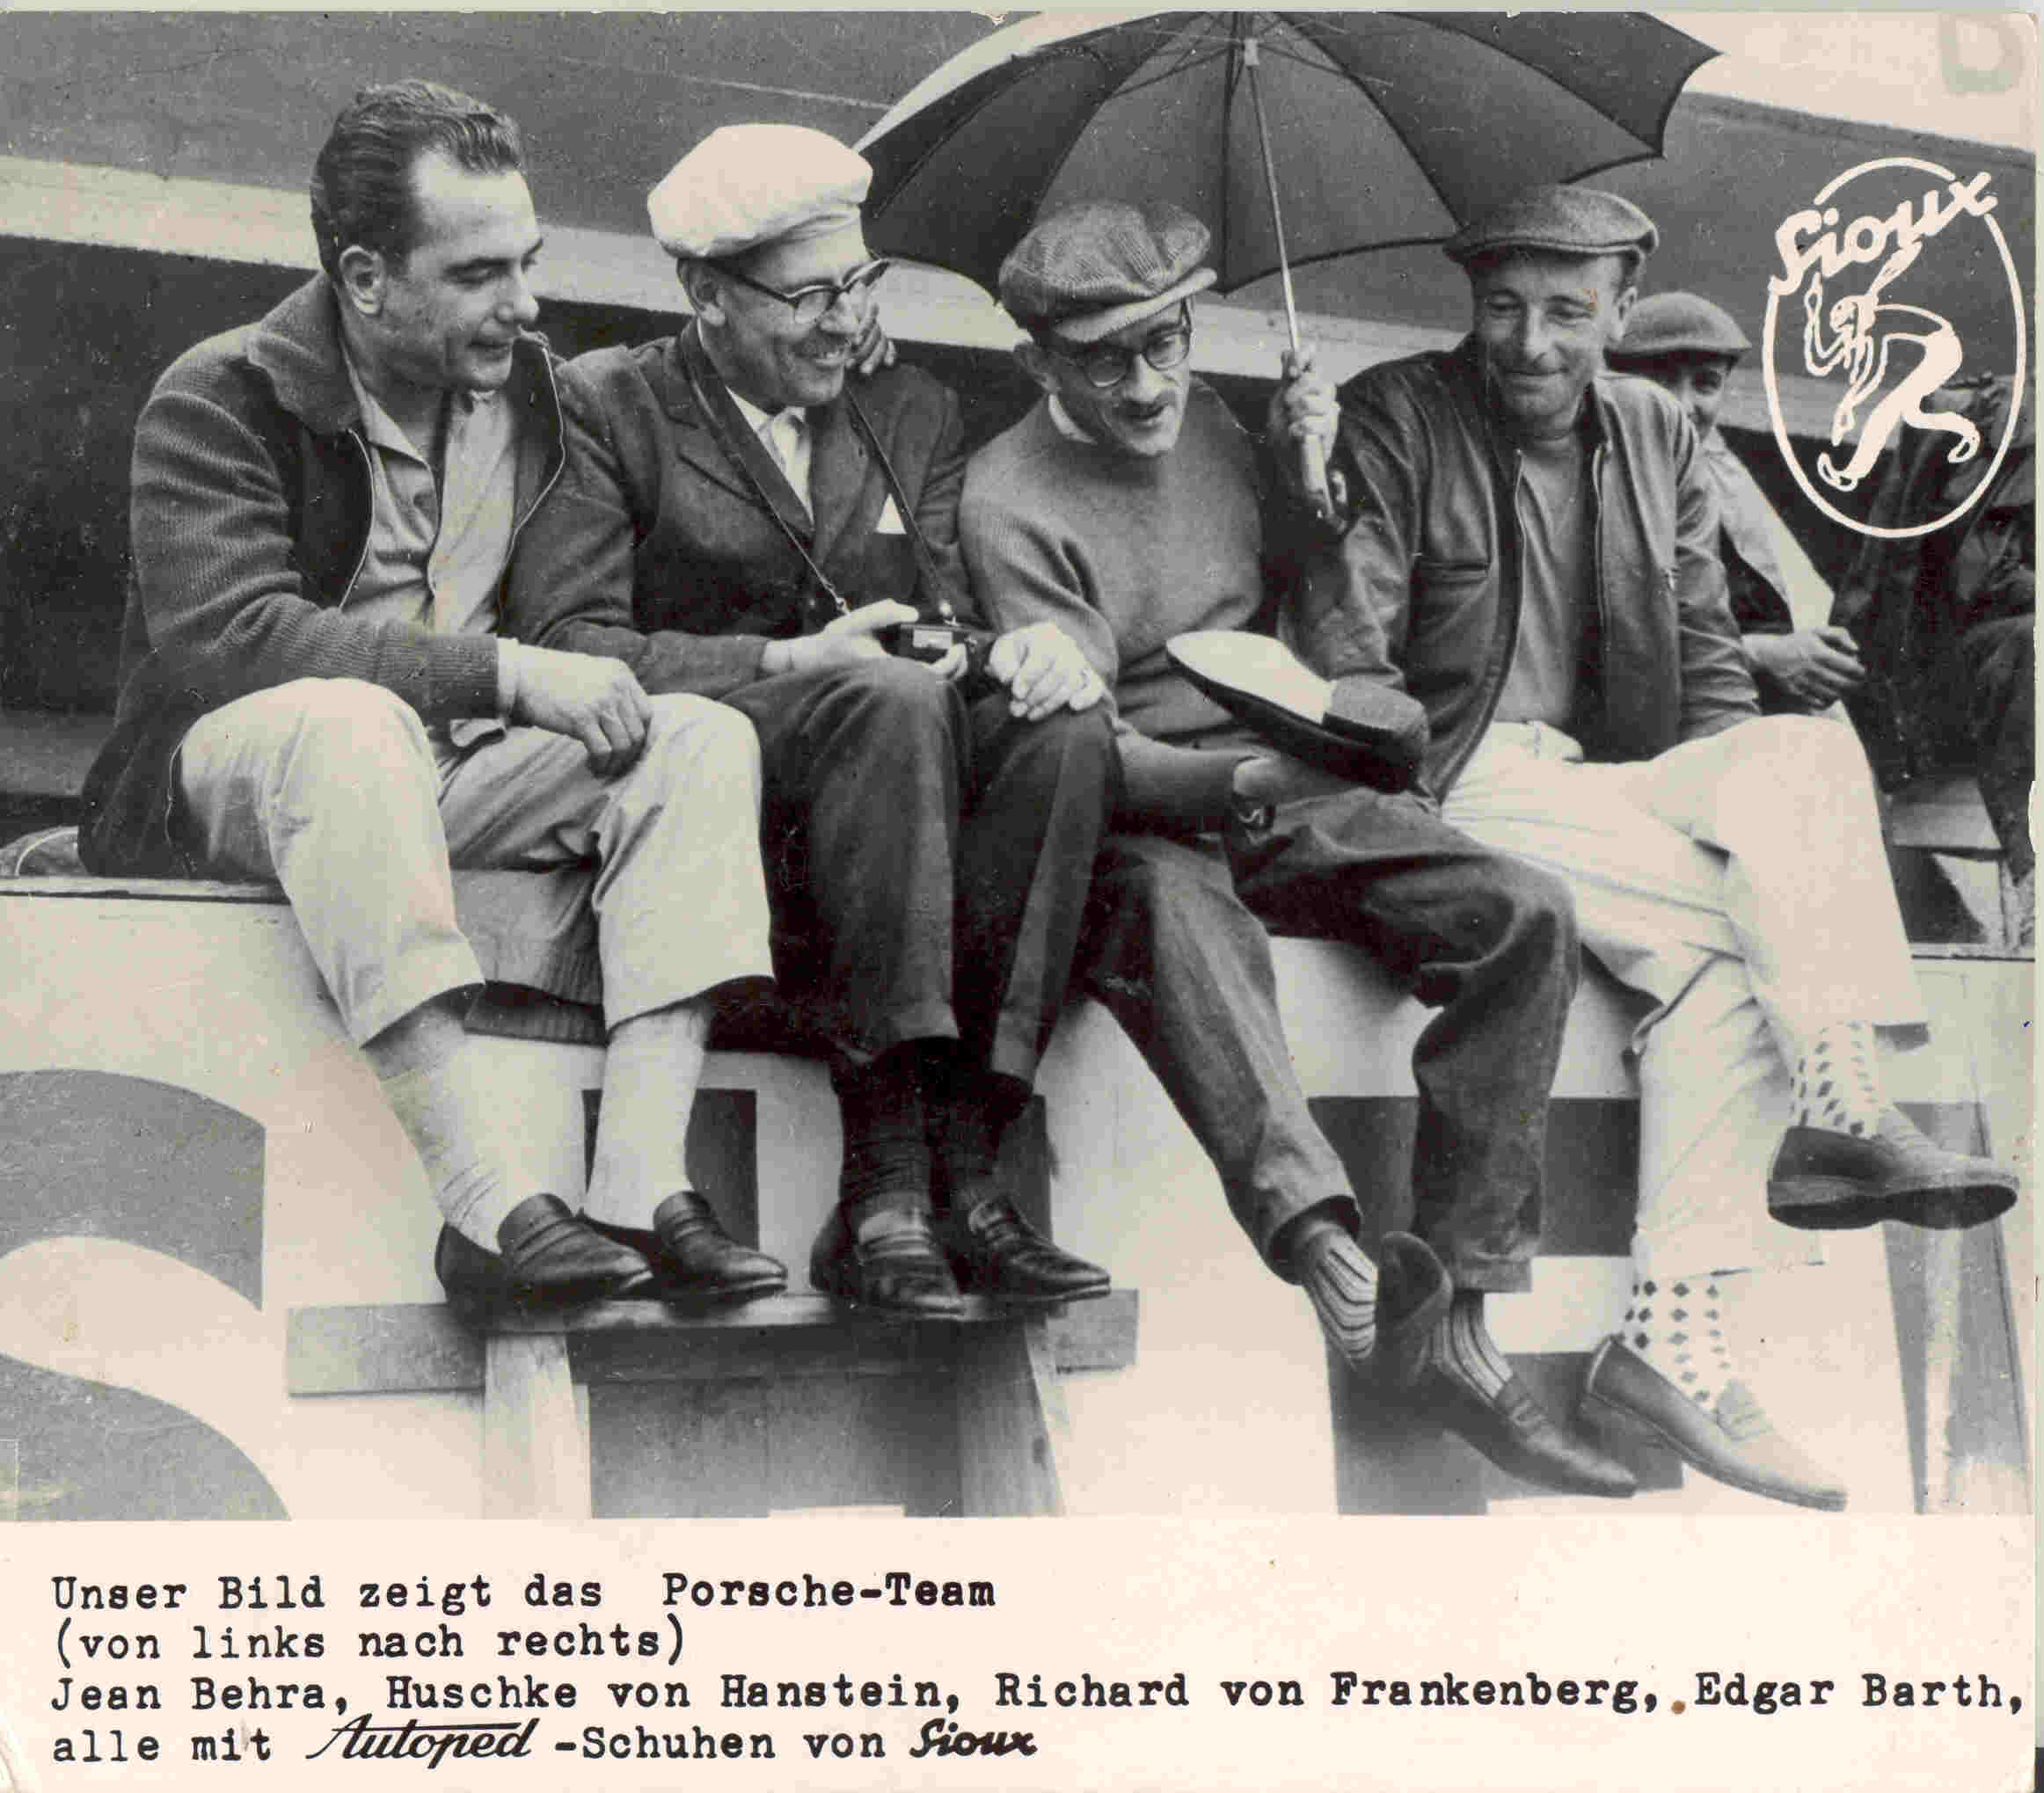 Jean Behra (left) with Fritz Huschke von Hanstein, Richard von Frankenberg and Edgar Barth.